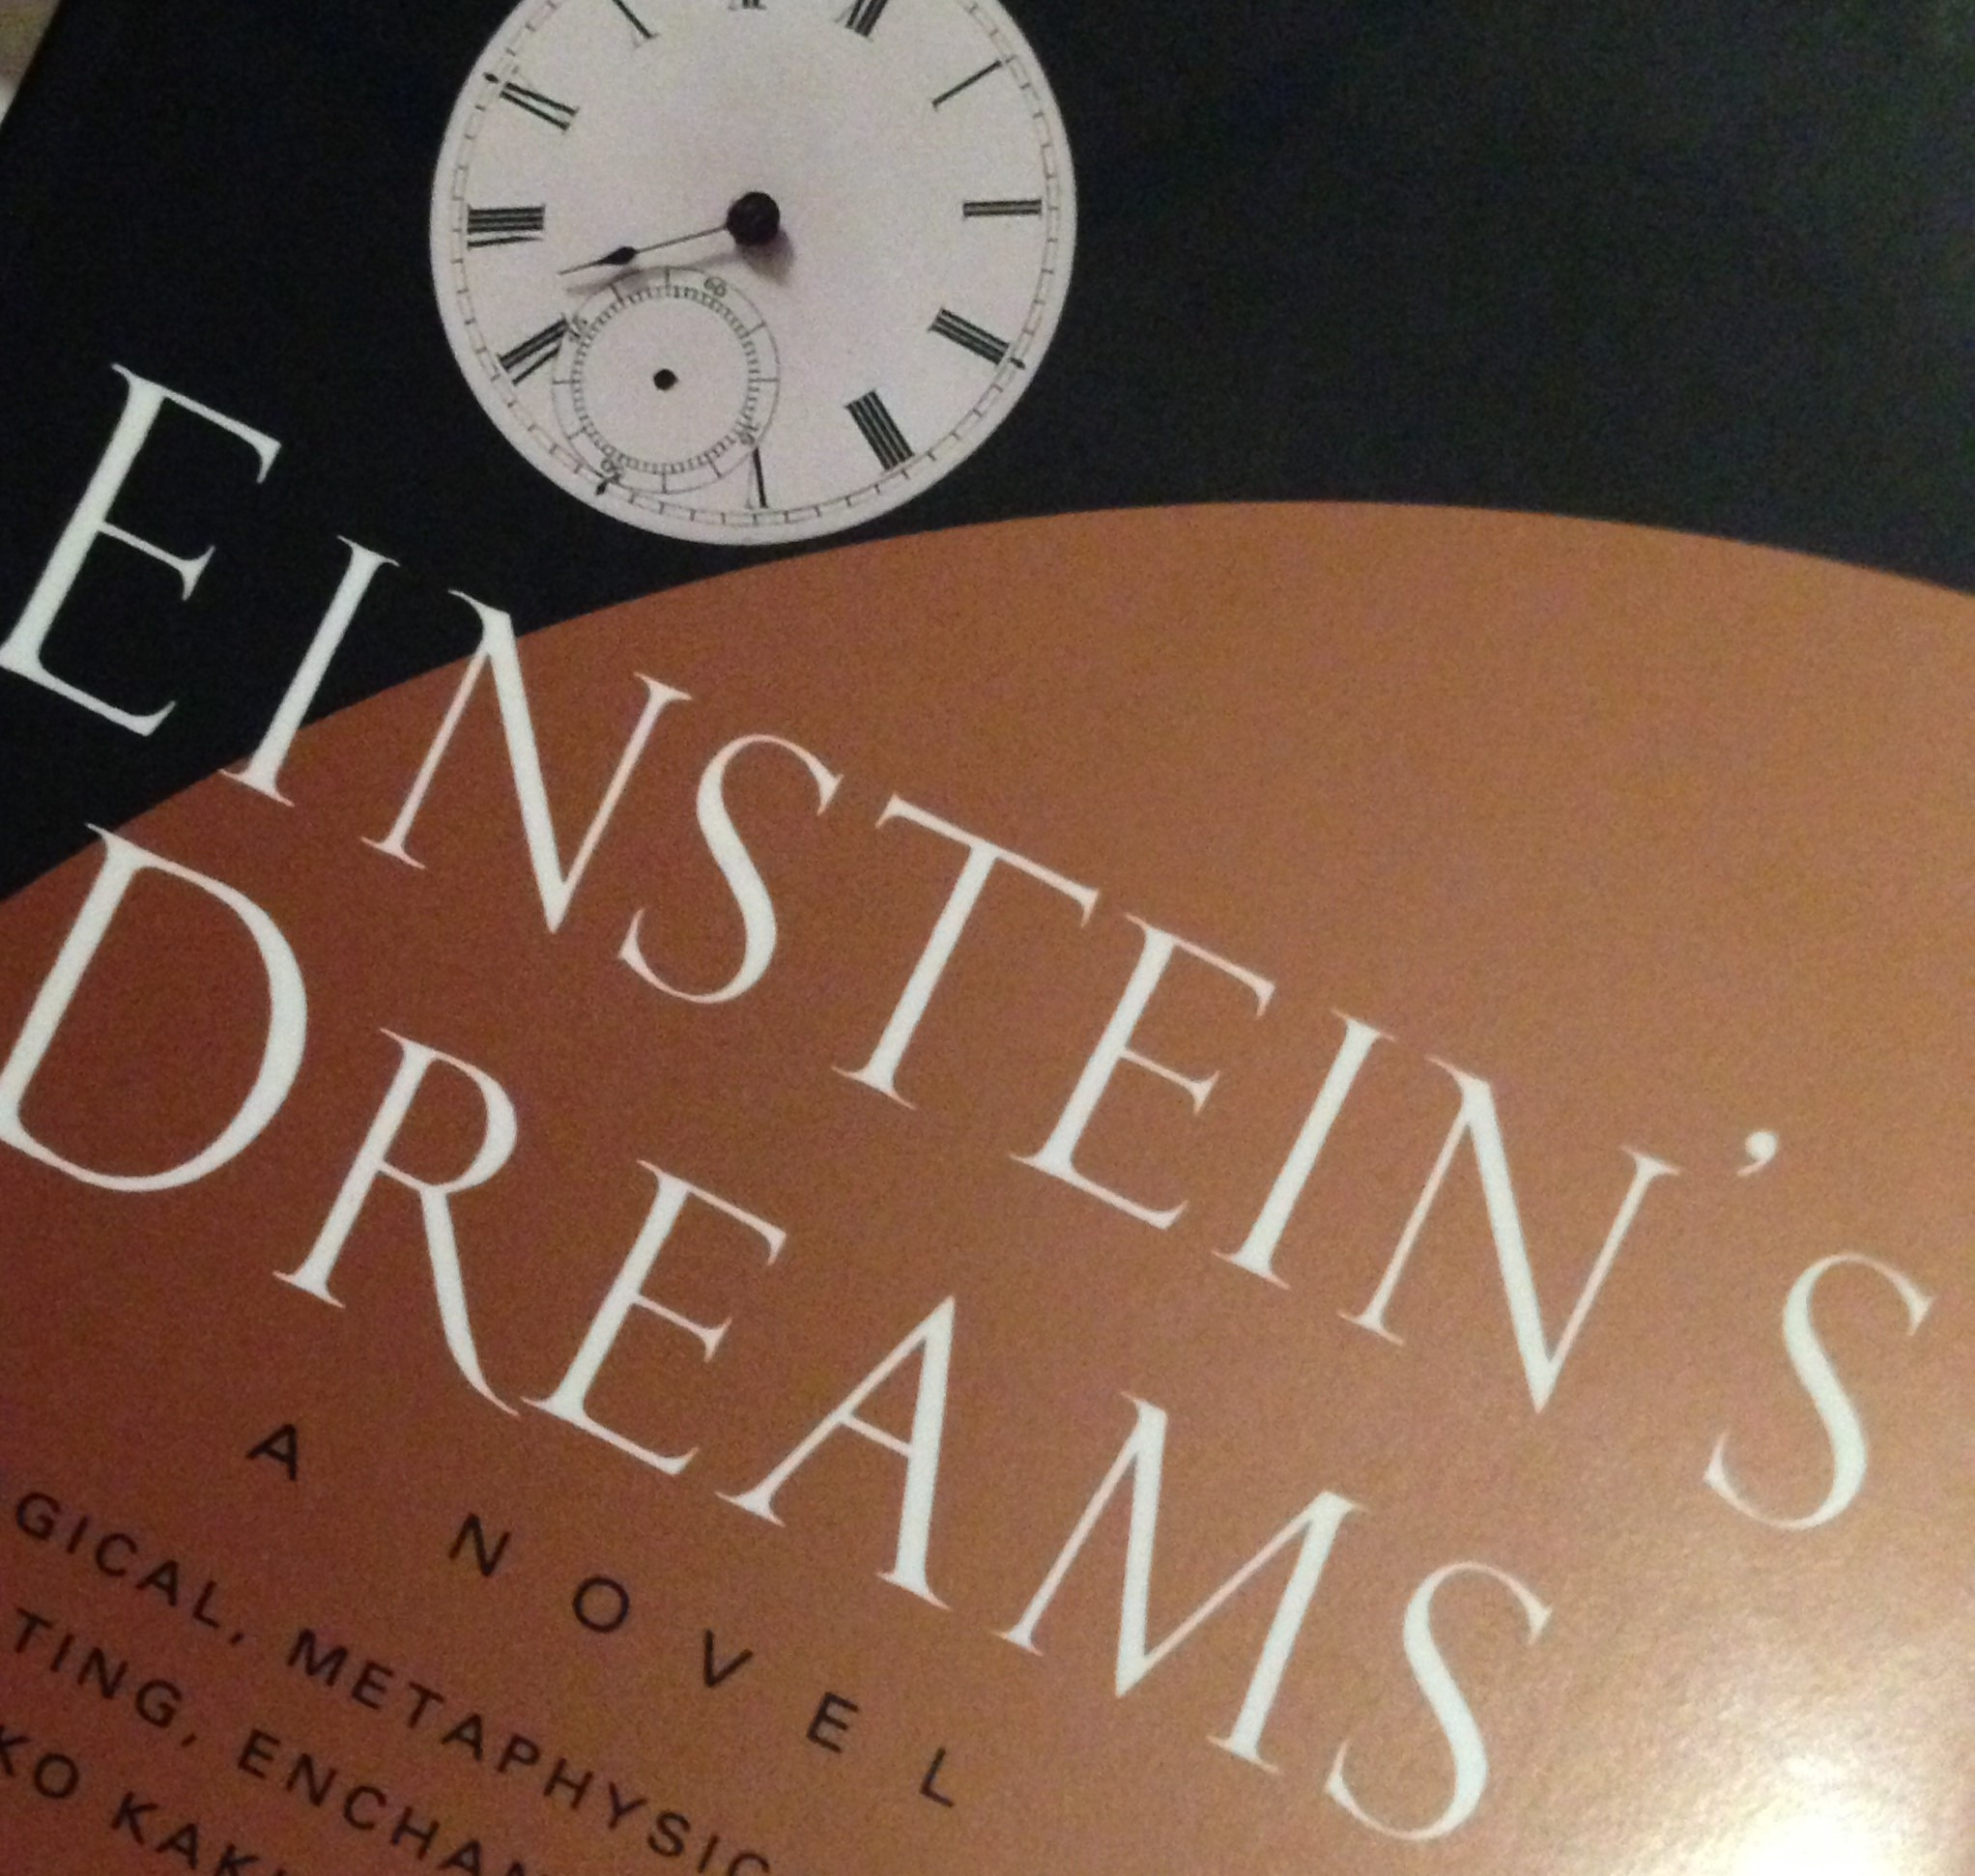 Einsteins Dreams